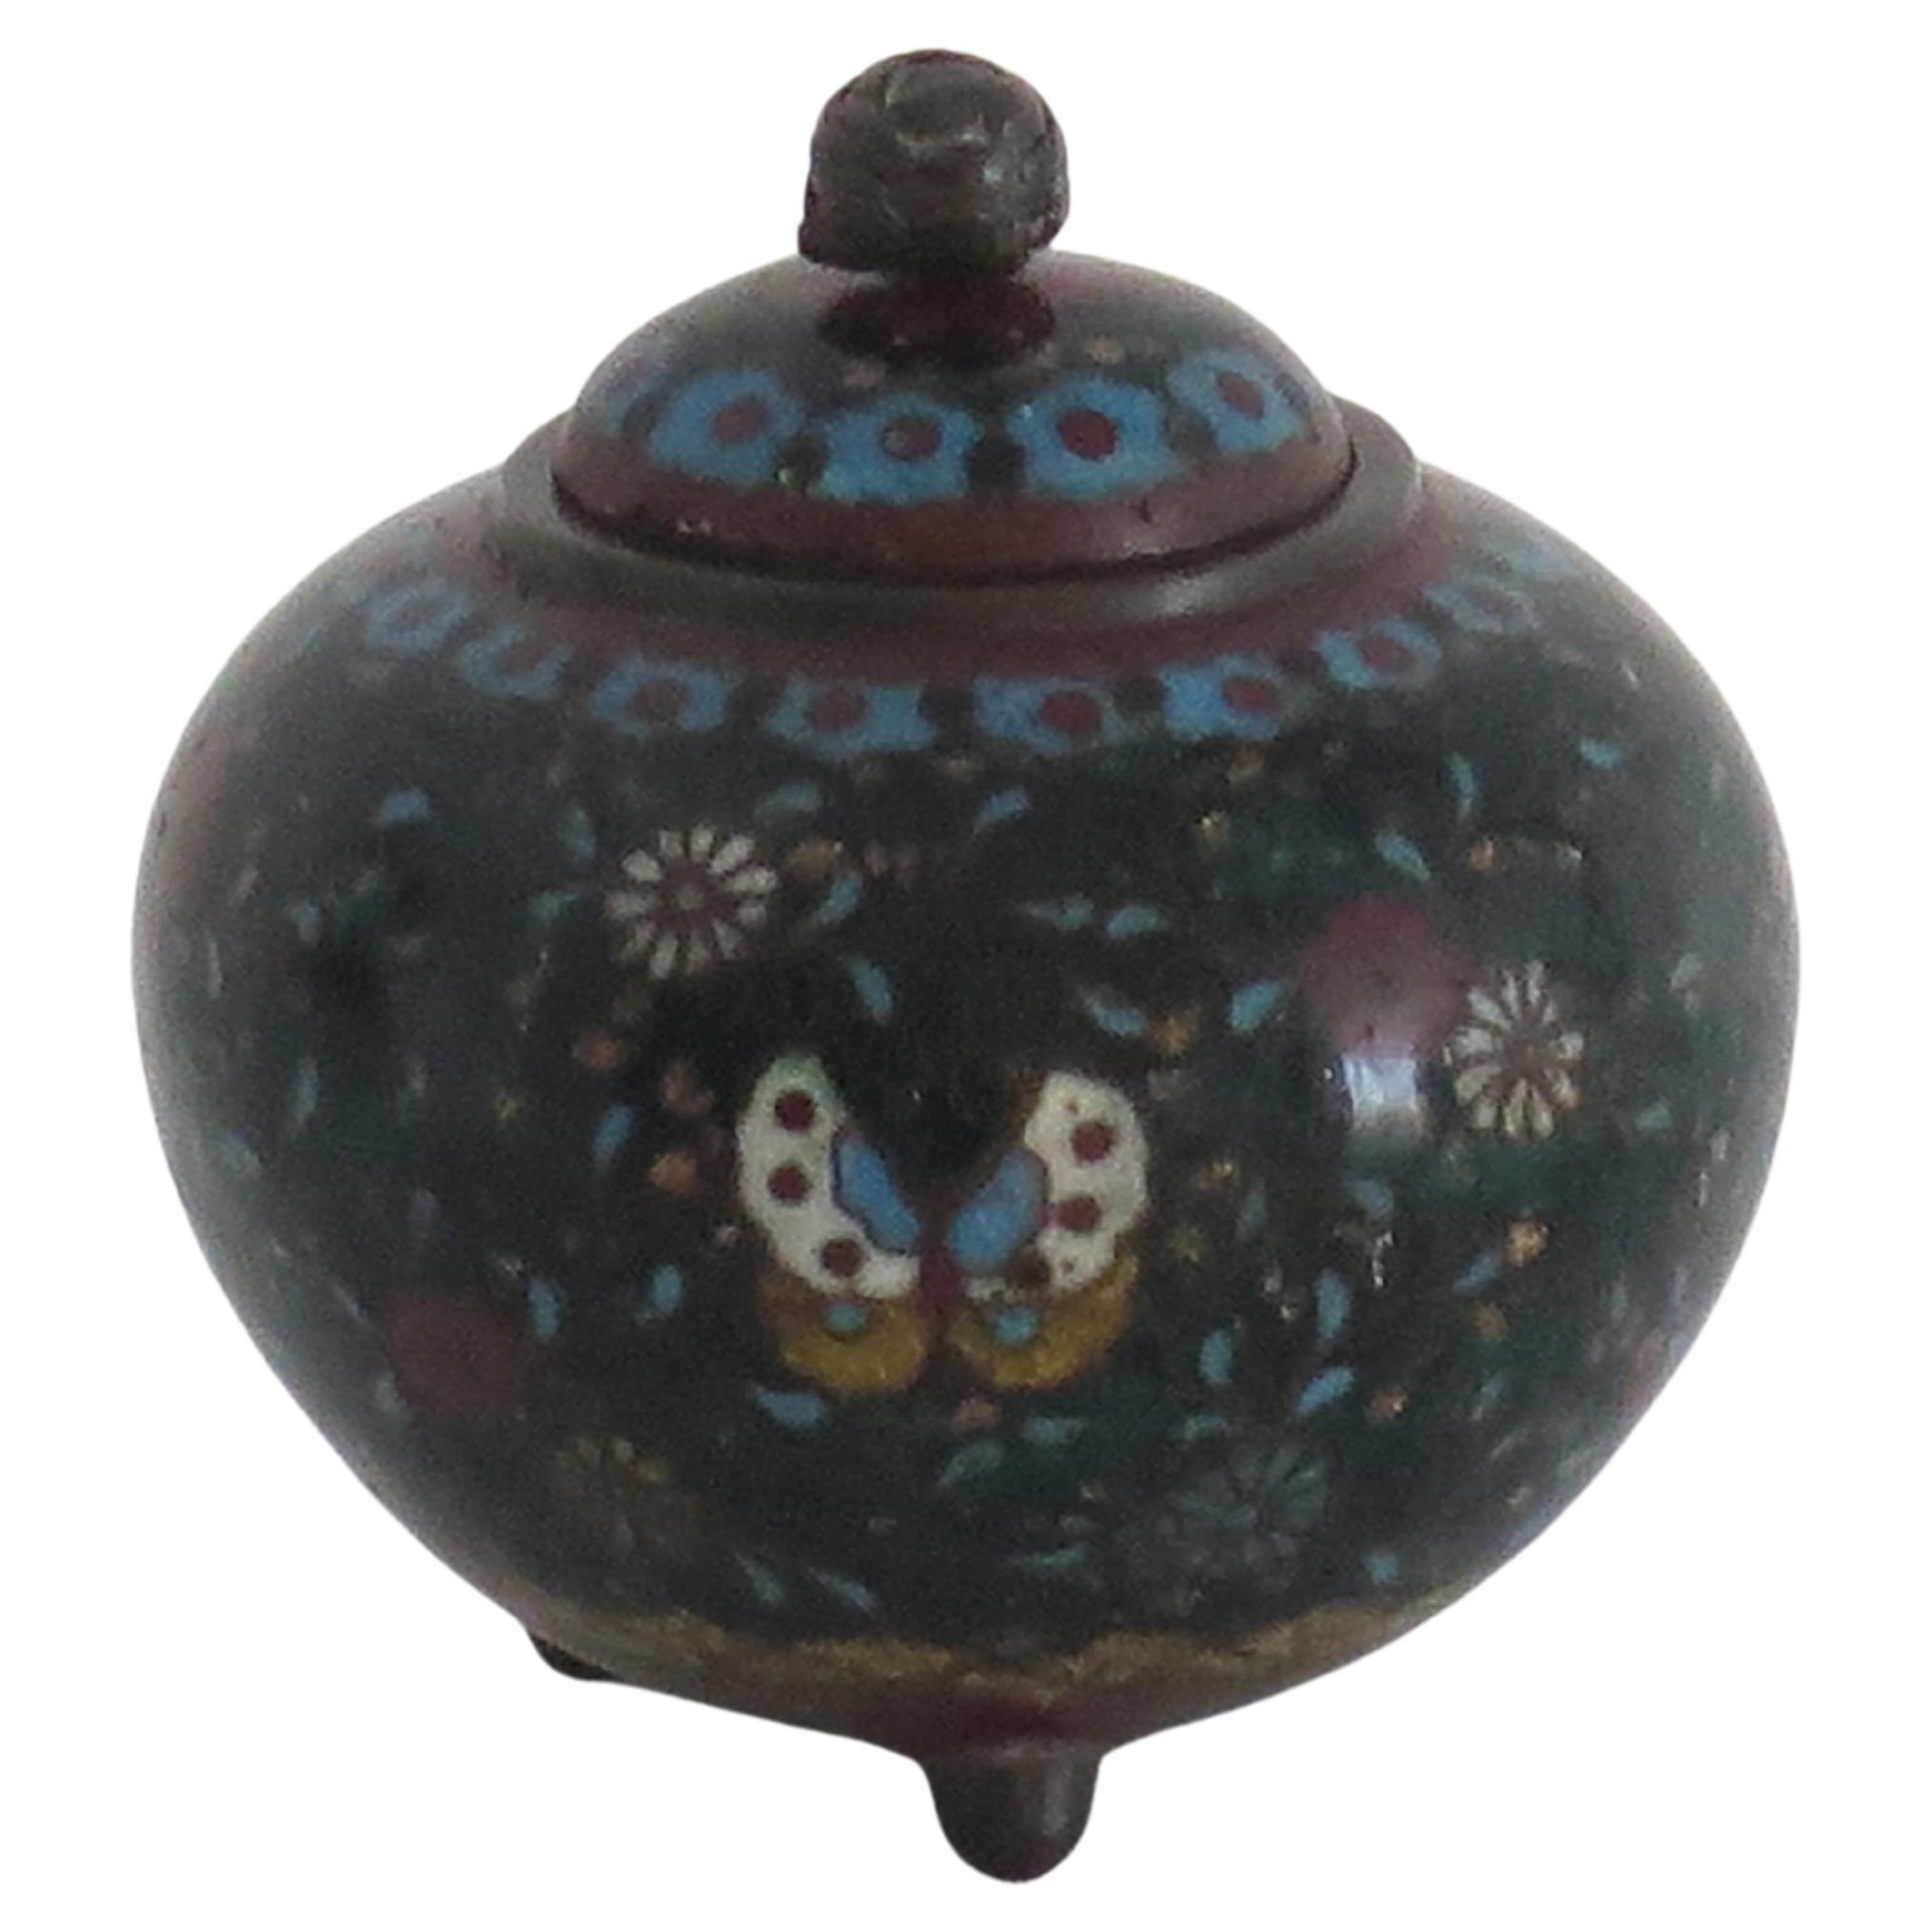 Il s'agit d'une petite jarre à couvercle cloisonné très décorative, fabriquée au Japon et datant du XIXe siècle, début de la période Meiji, vers 1875 ou peut-être plus tôt.

La jarre présente une forme globulaire comprimée avec un col court et